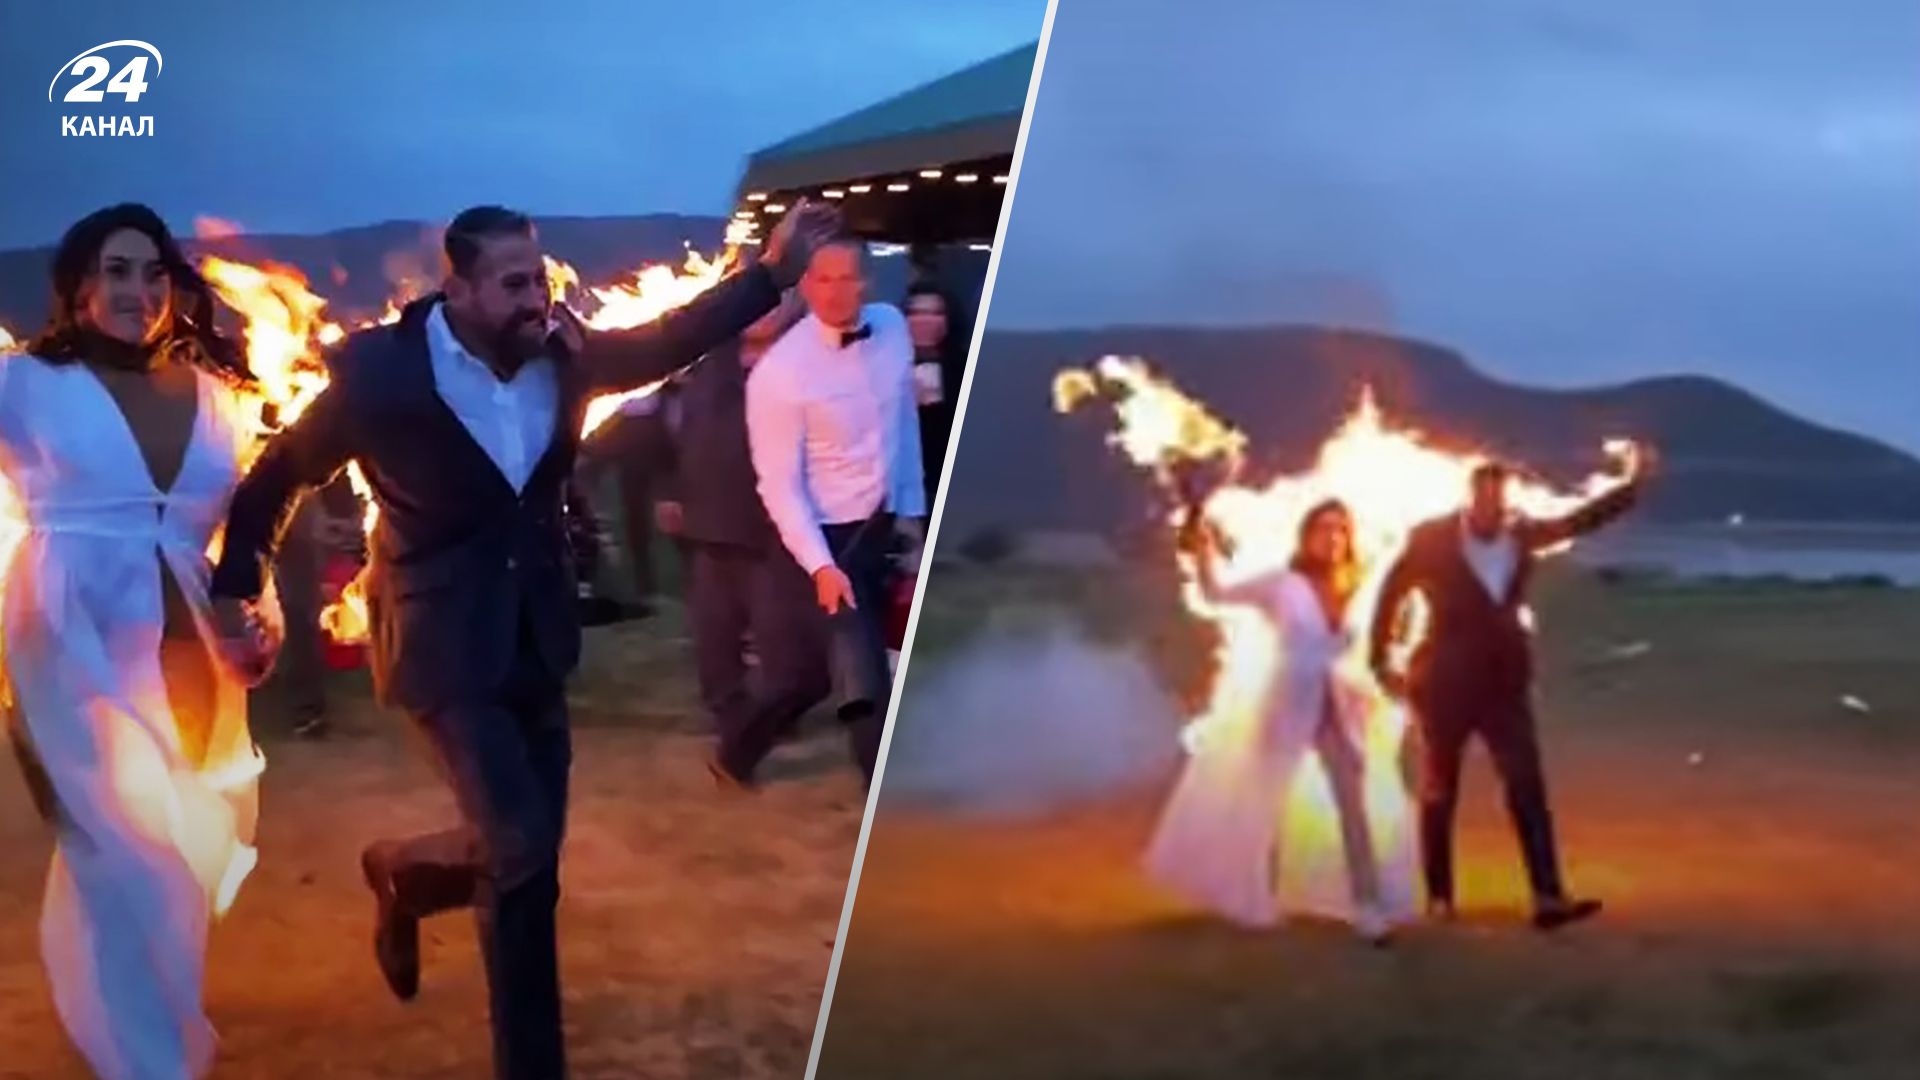 Каскадери підпалили себе під час весілля - епічні деталі